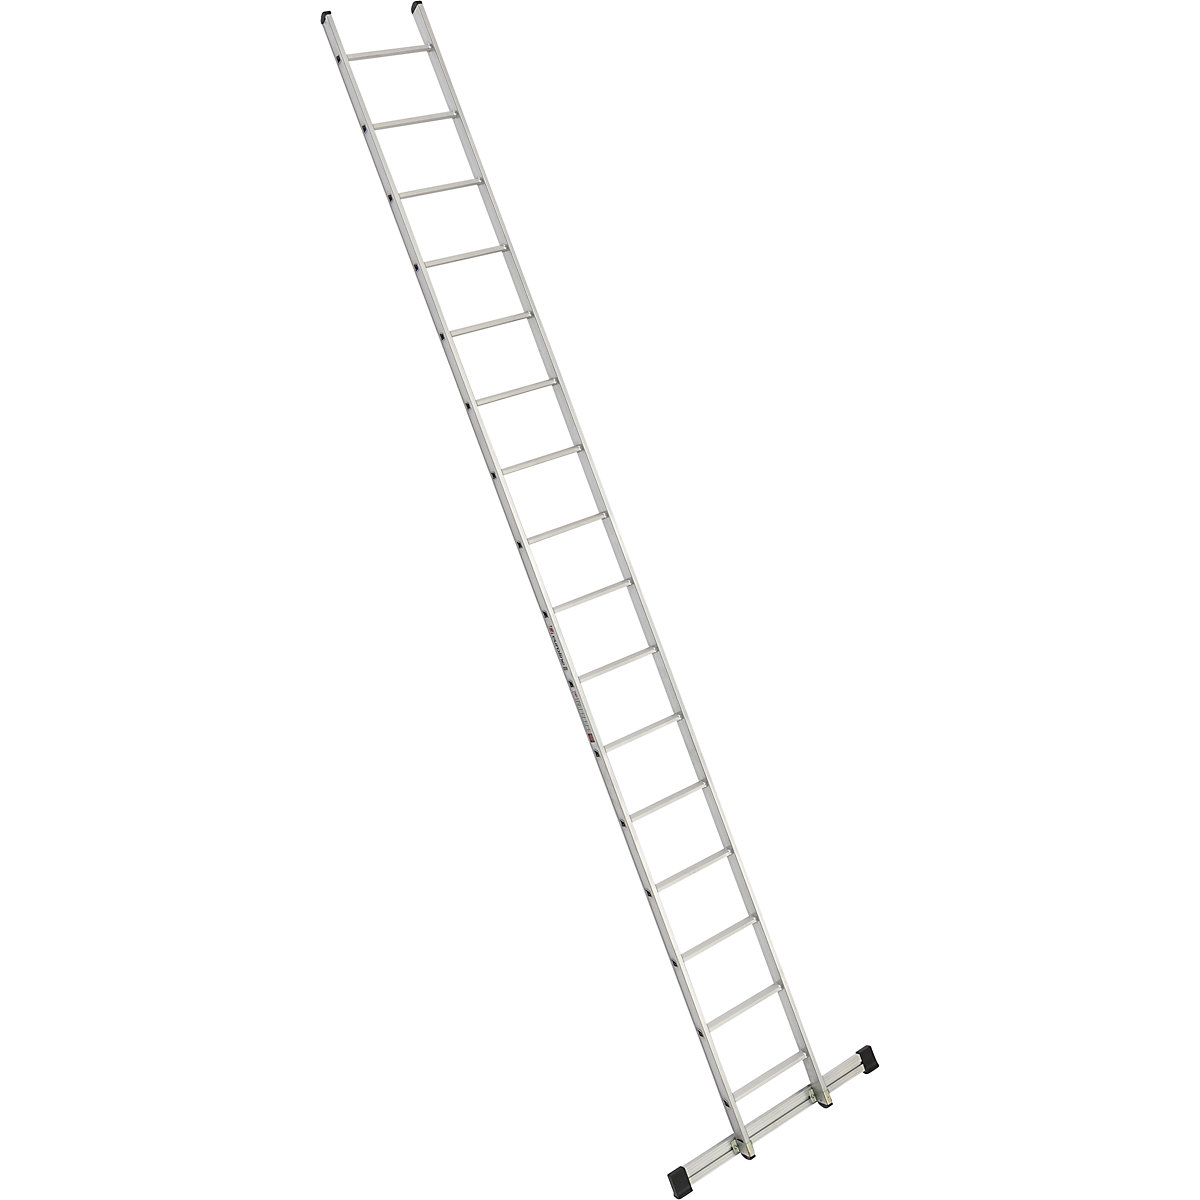 Príložný rebrík s priečkami – euroline, šírka 410 mm, 16 priečok s priečnikom-6